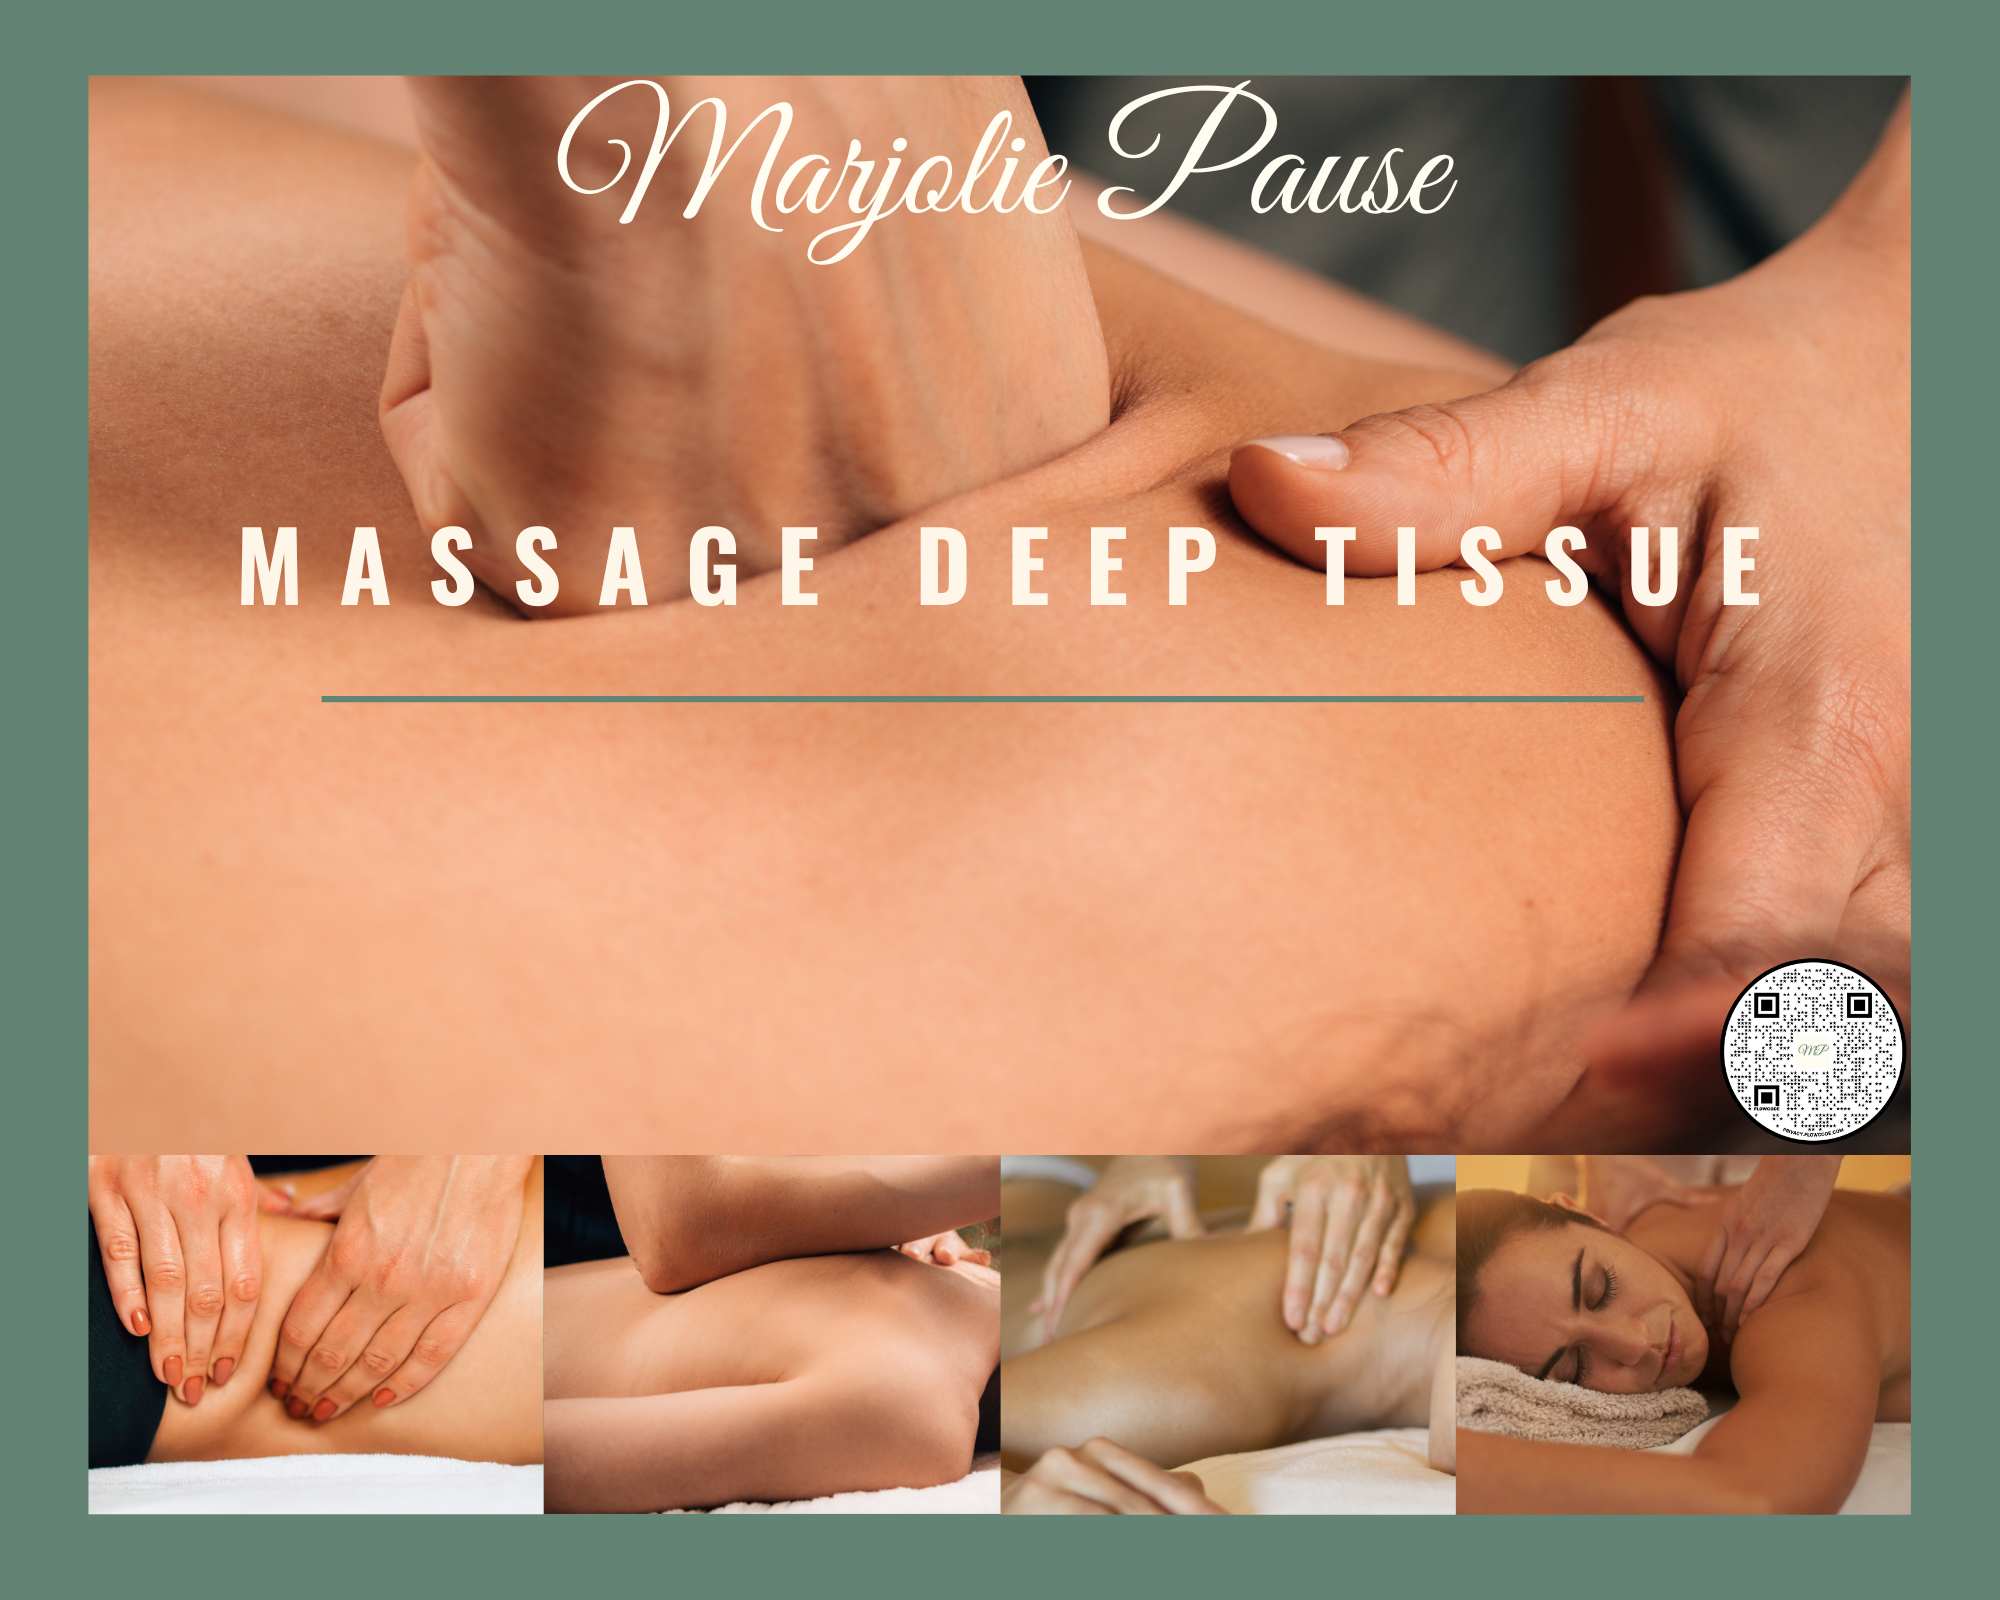 massage deep tissue avec marjolie pause à Gardanne relaxation et bien etre